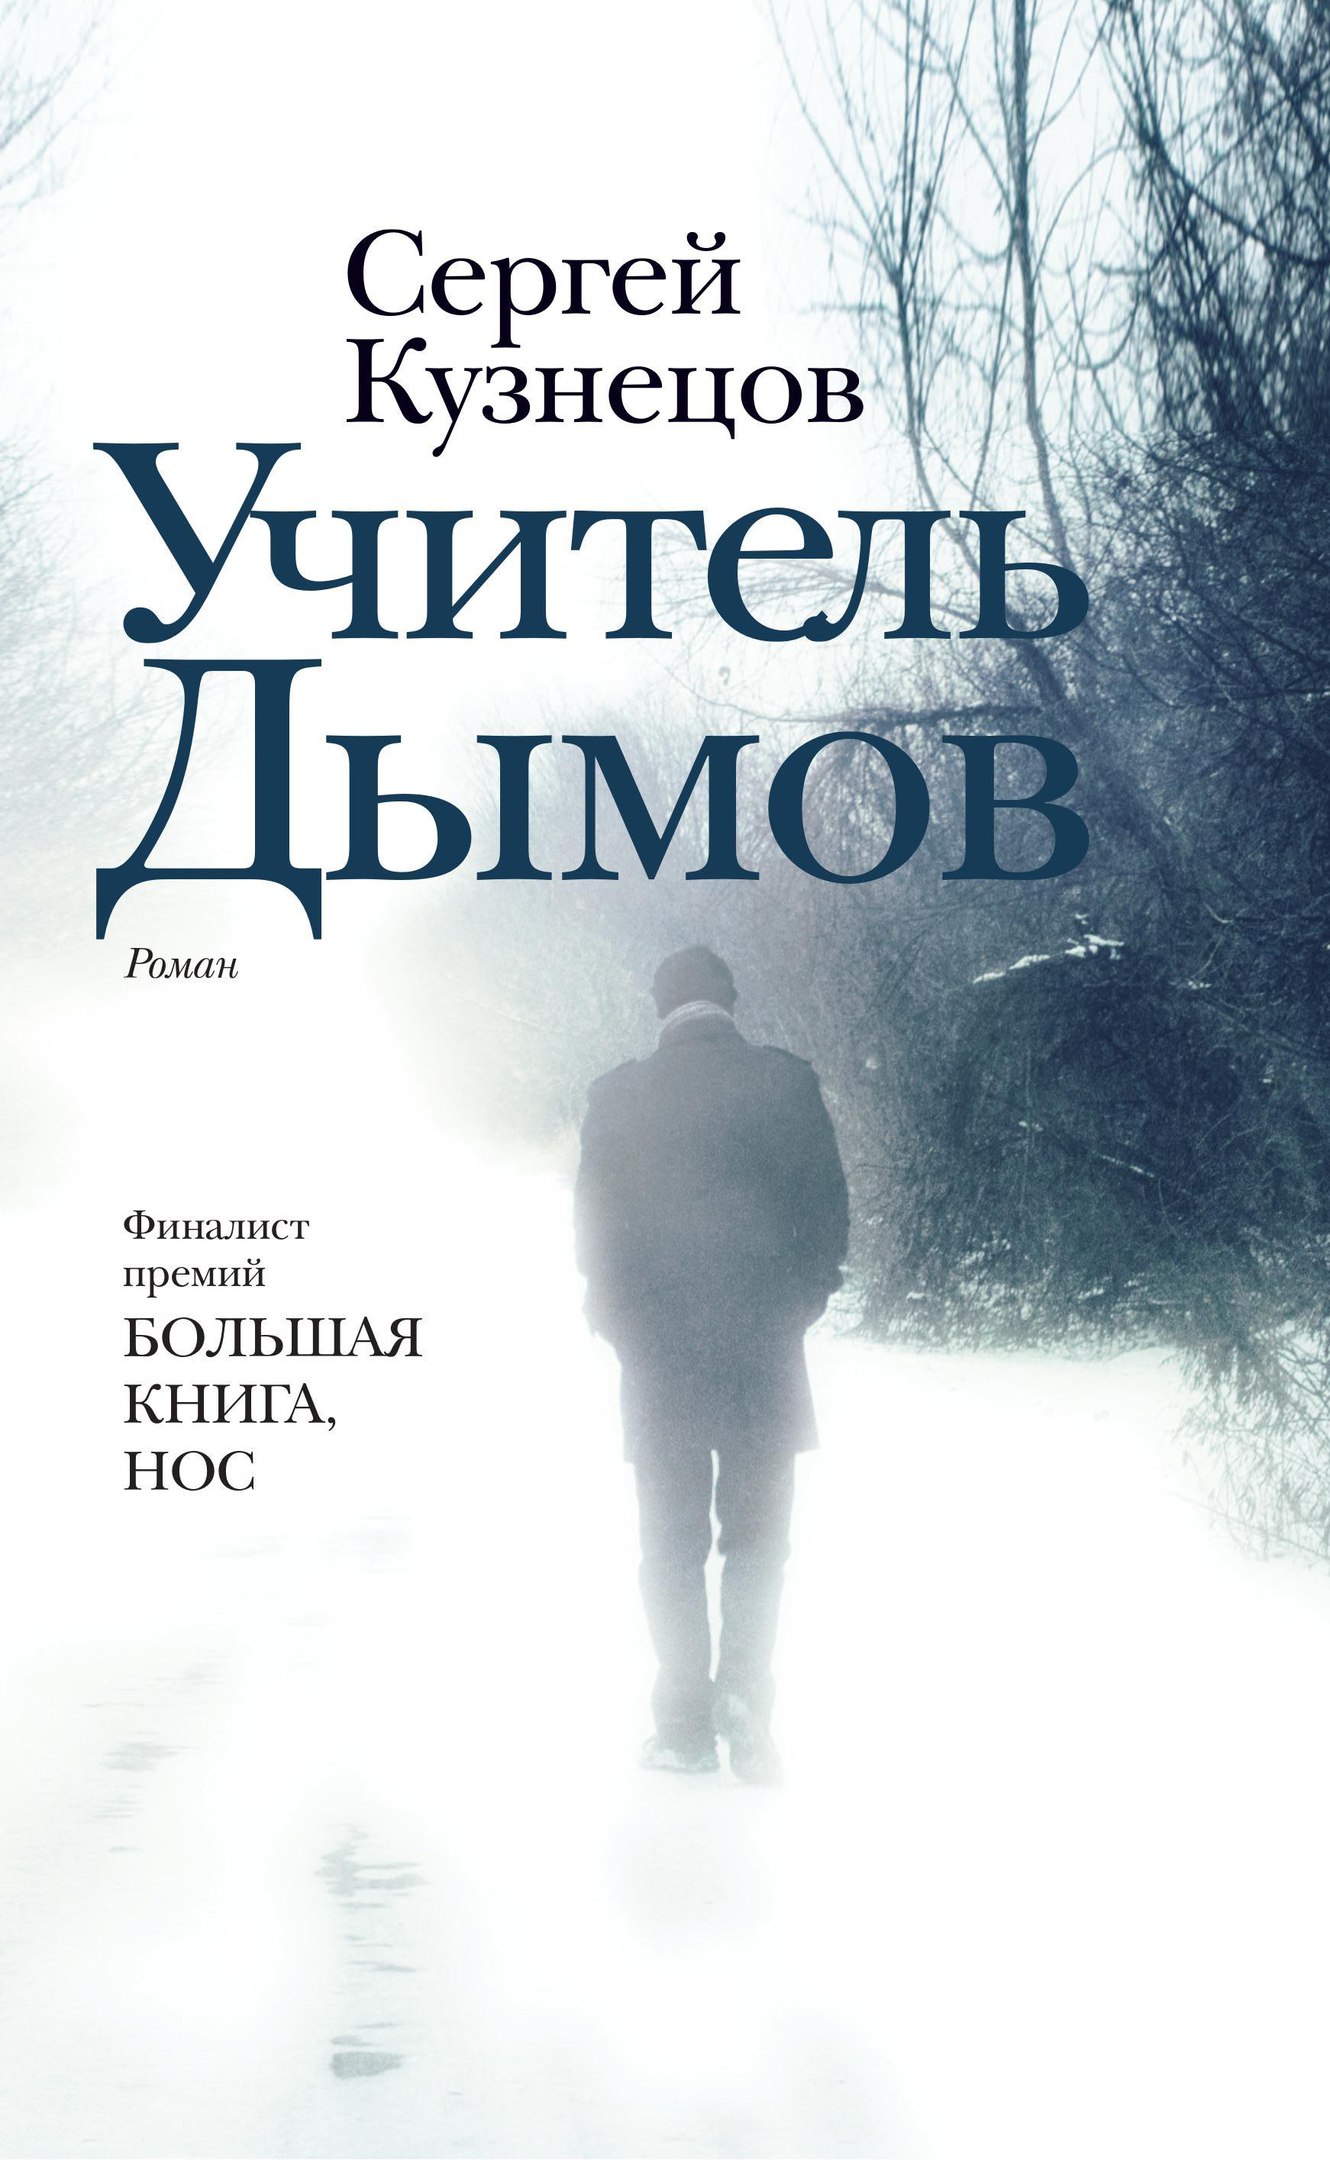 Скачать бесплатно русские семейные саги книги